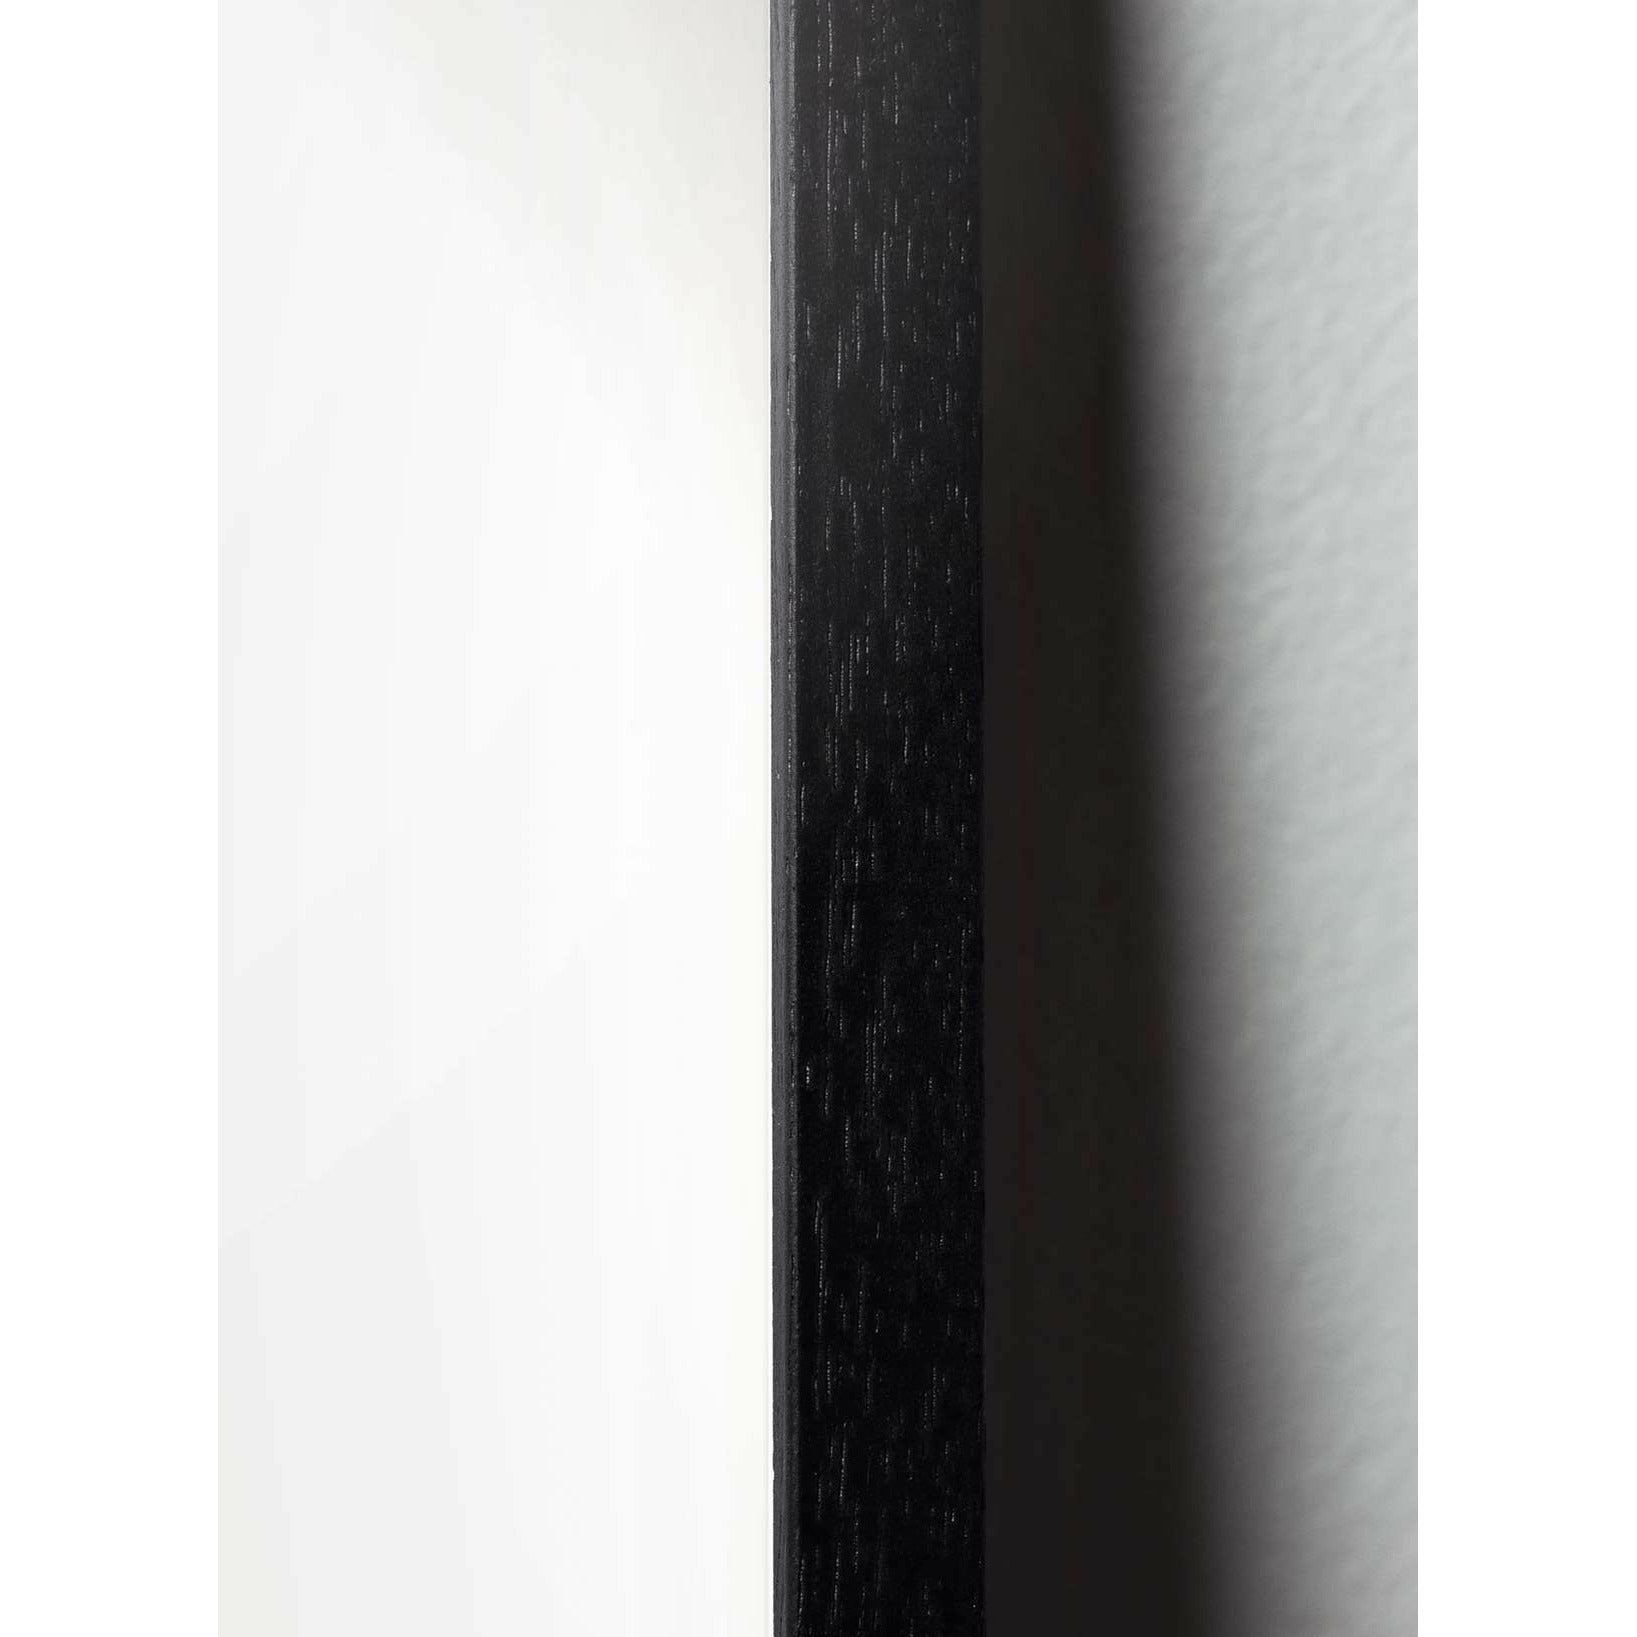 Plakát s labuťovou sponou s labuťovou sponou, rám v černém lakovaném dřevu A5, růžové pozadí